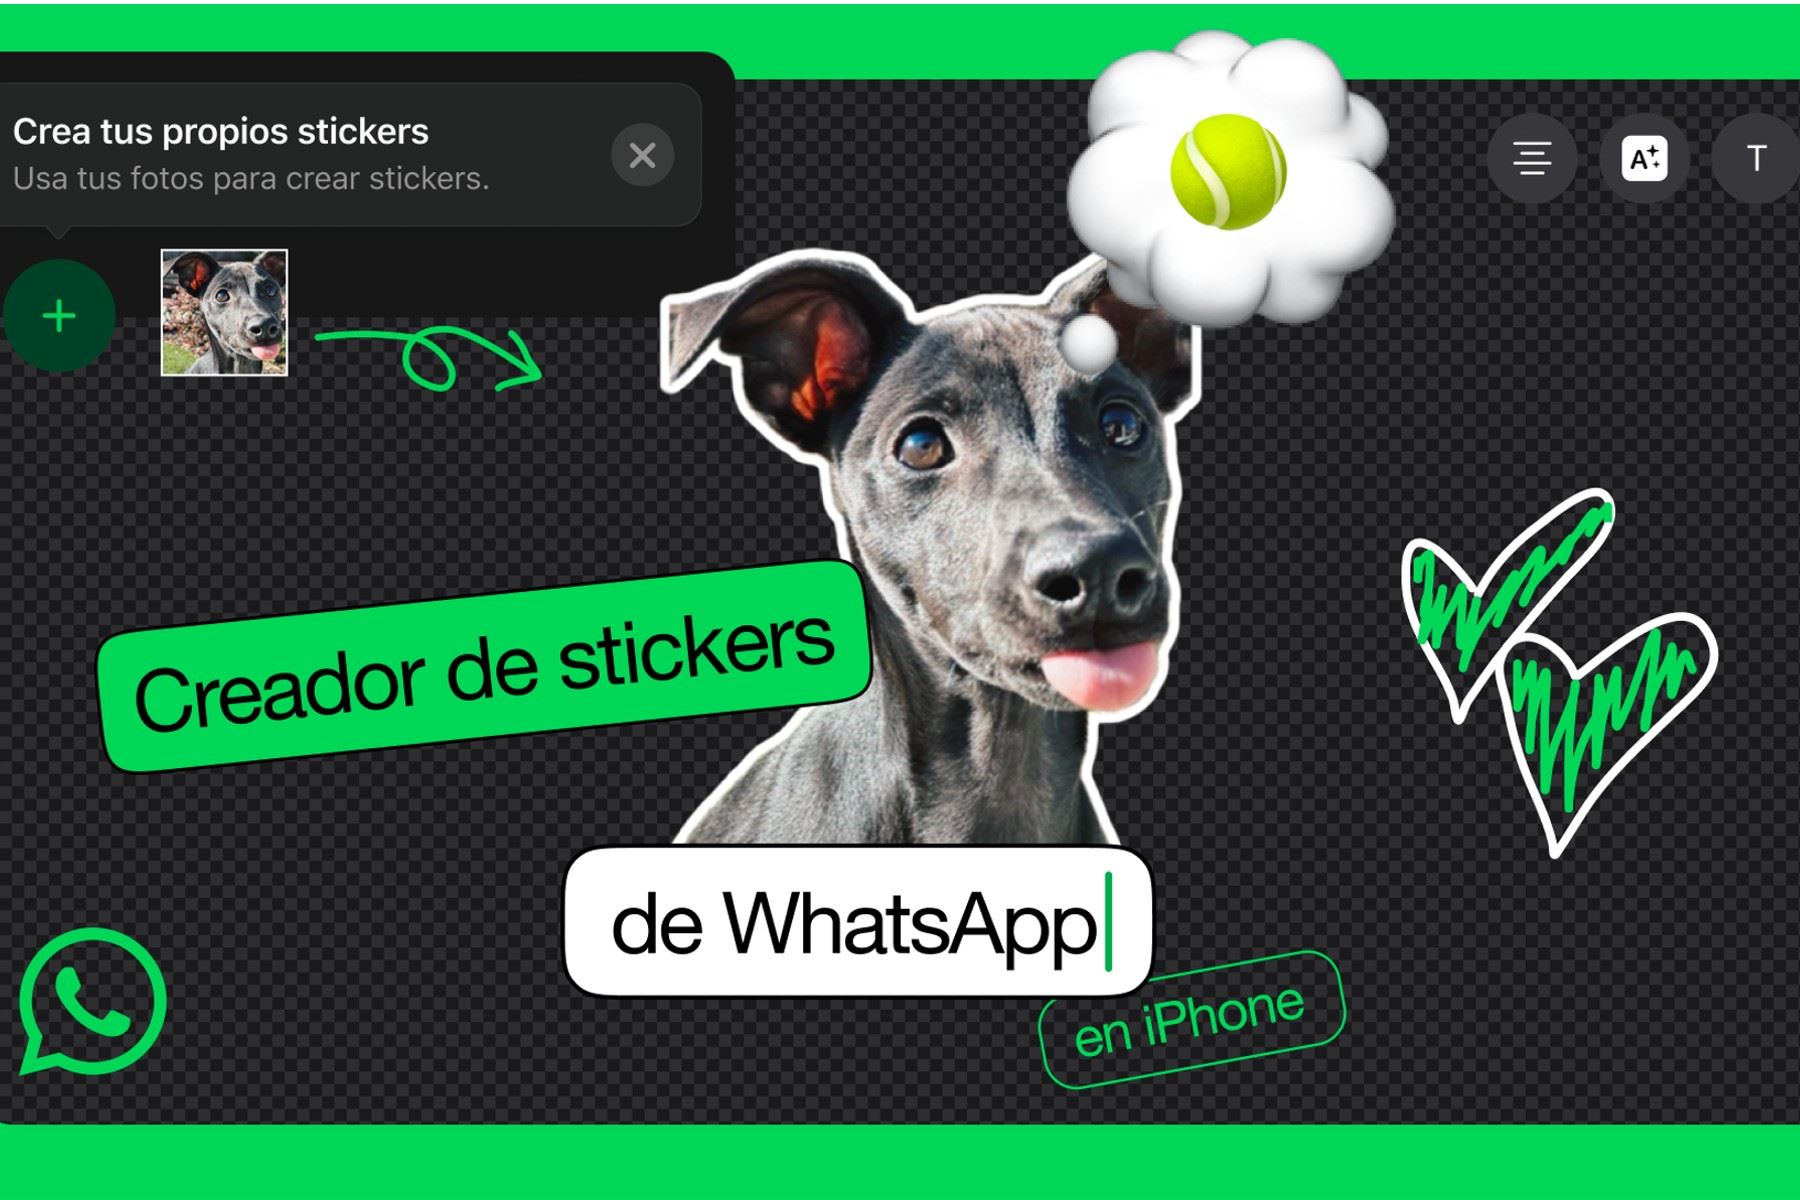 Ahora podrás crear stickers para WhatsApp desde la misma aplicación.